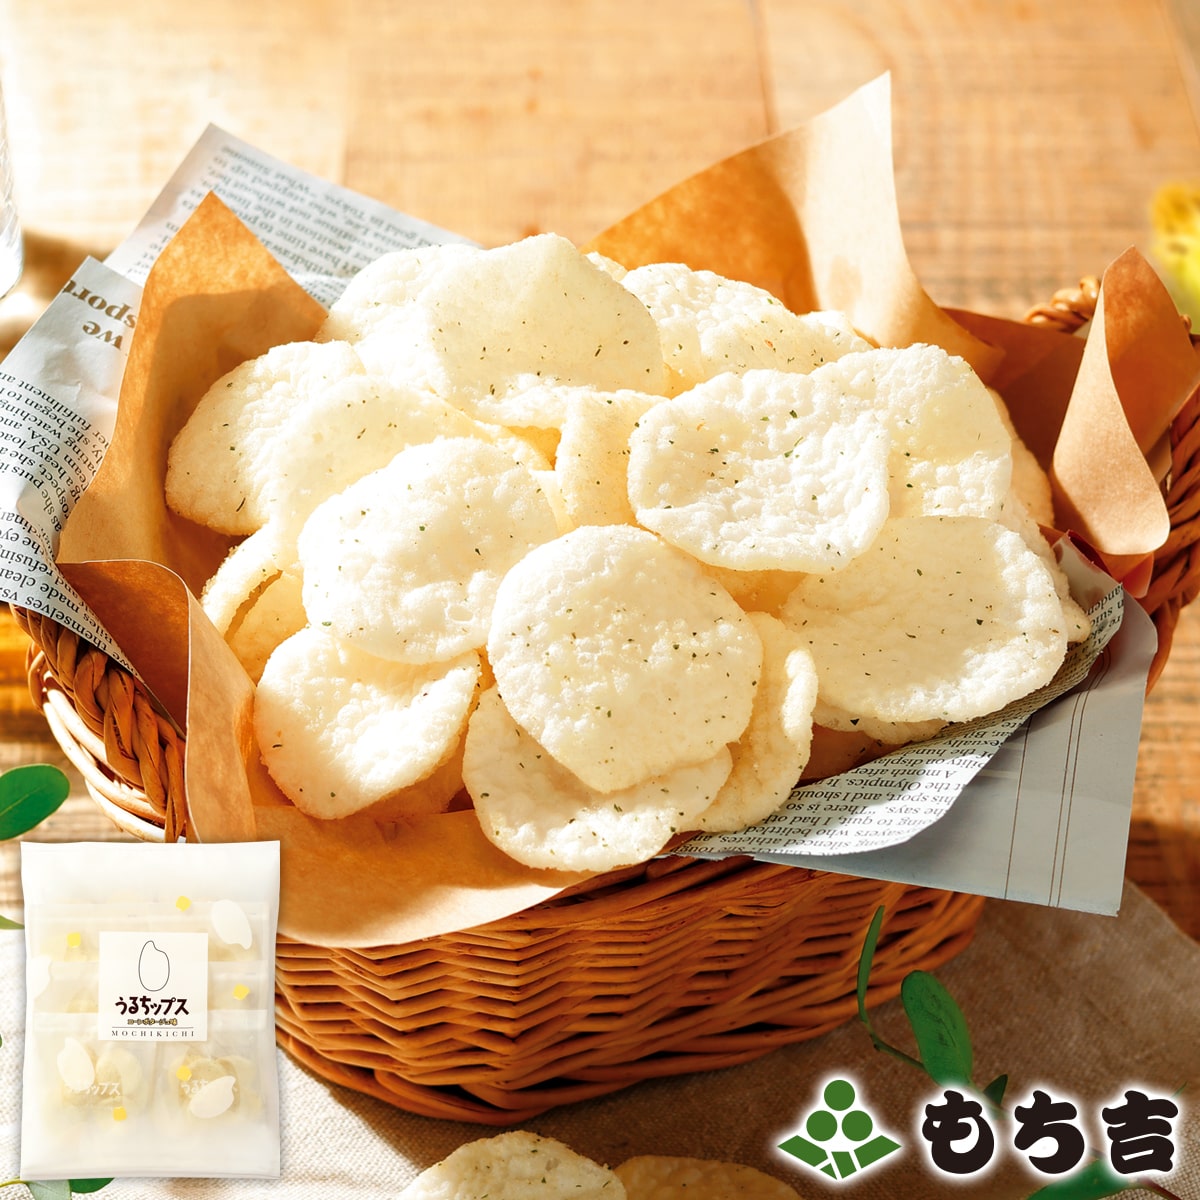 粳米洋芋片 玉米濃湯味 袋裝 仙貝 米菓 日本必買 | 日本樂天熱銷